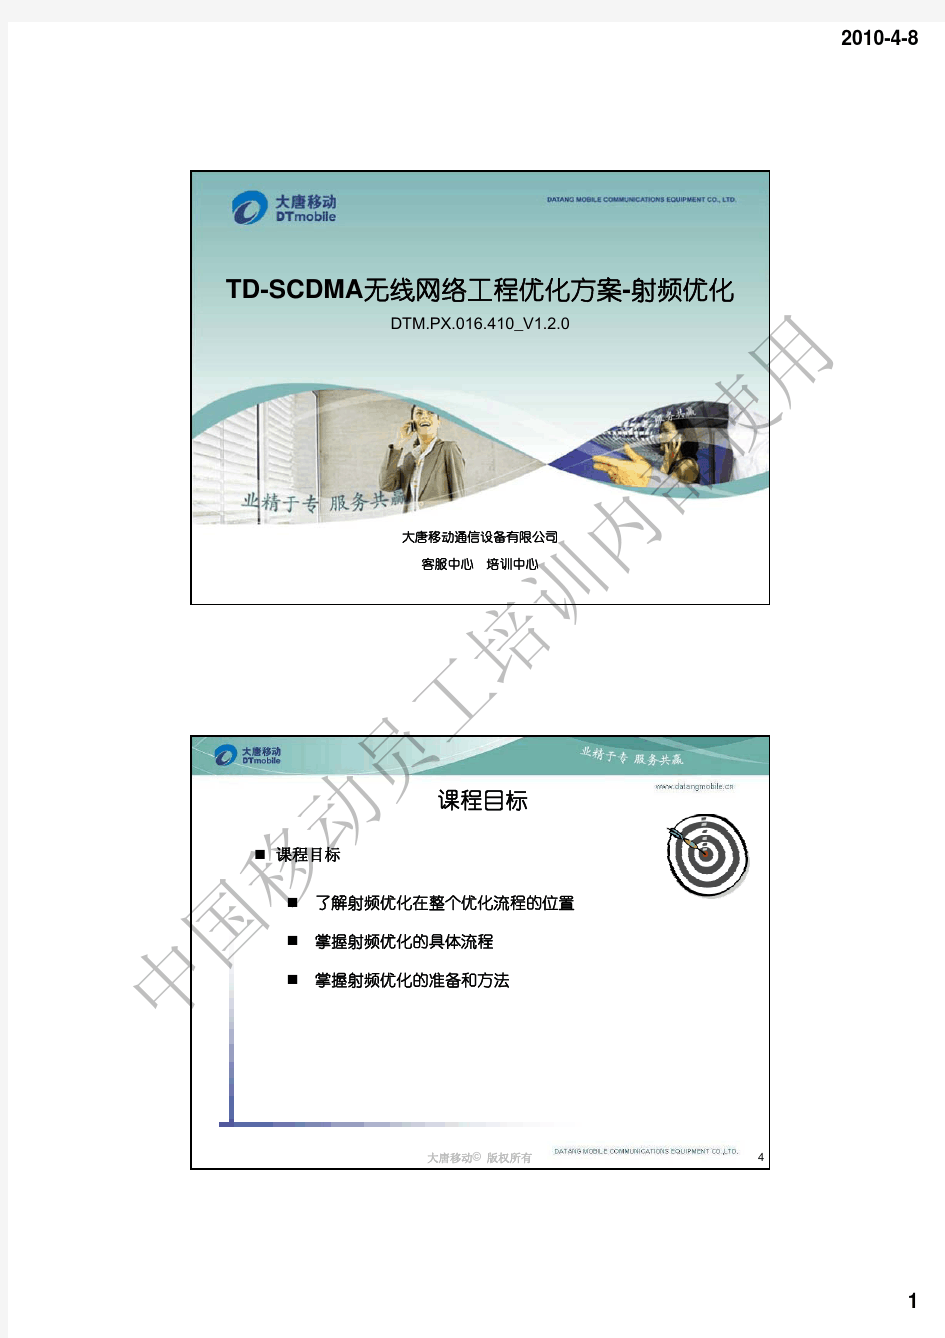 15 TD-SCDMA无线网络工程优化方案-射频优化_V1.2.0